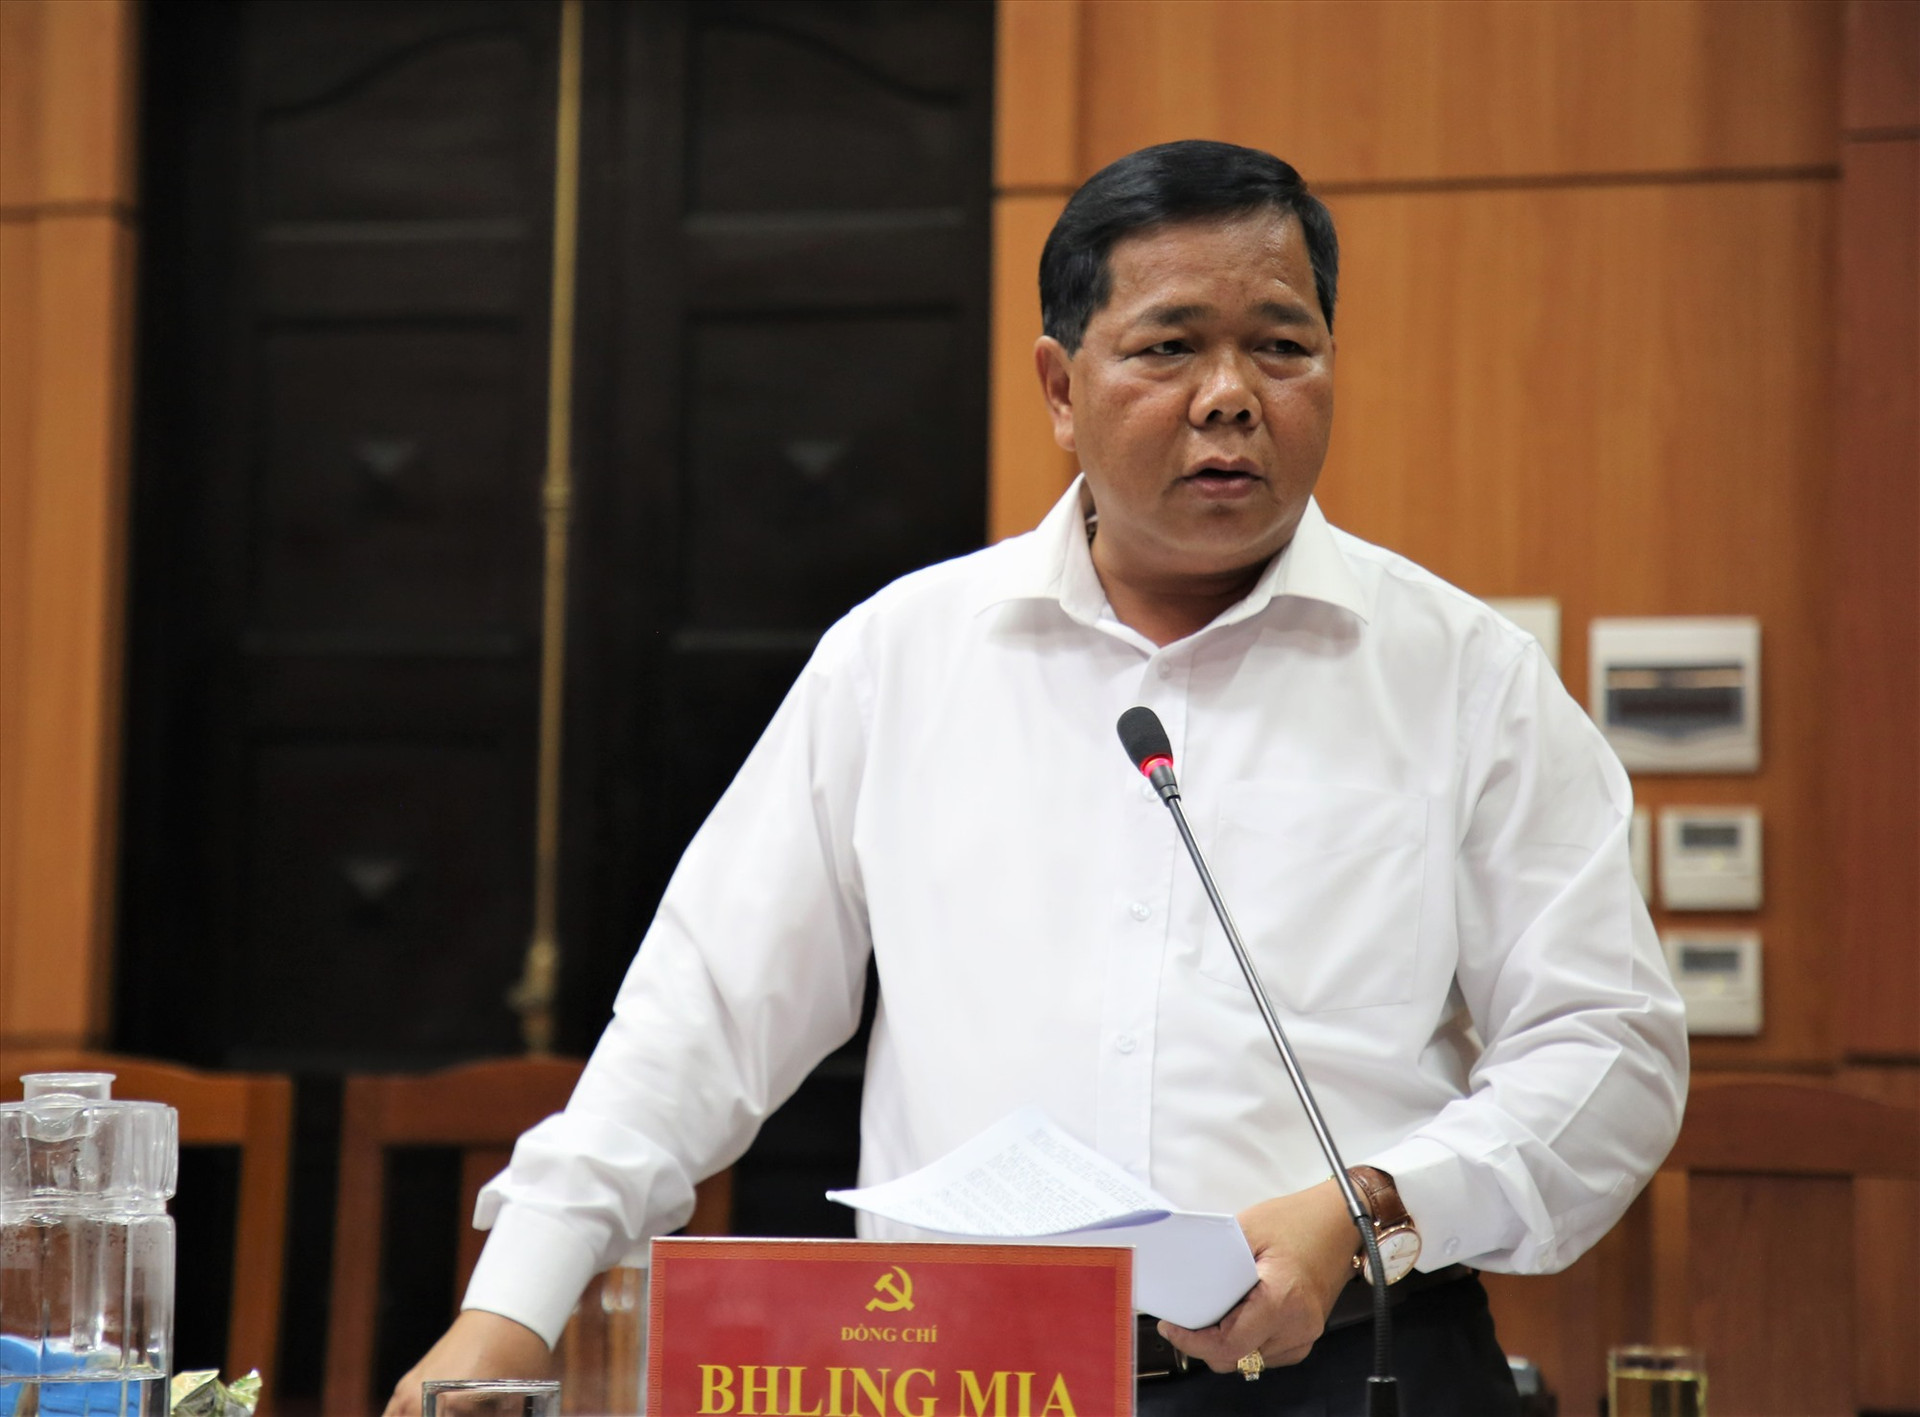 Bí thư Huyện ủy Tây Giang Bh'ling Mia báo cáo kết quả giữa nhiệm kỳ